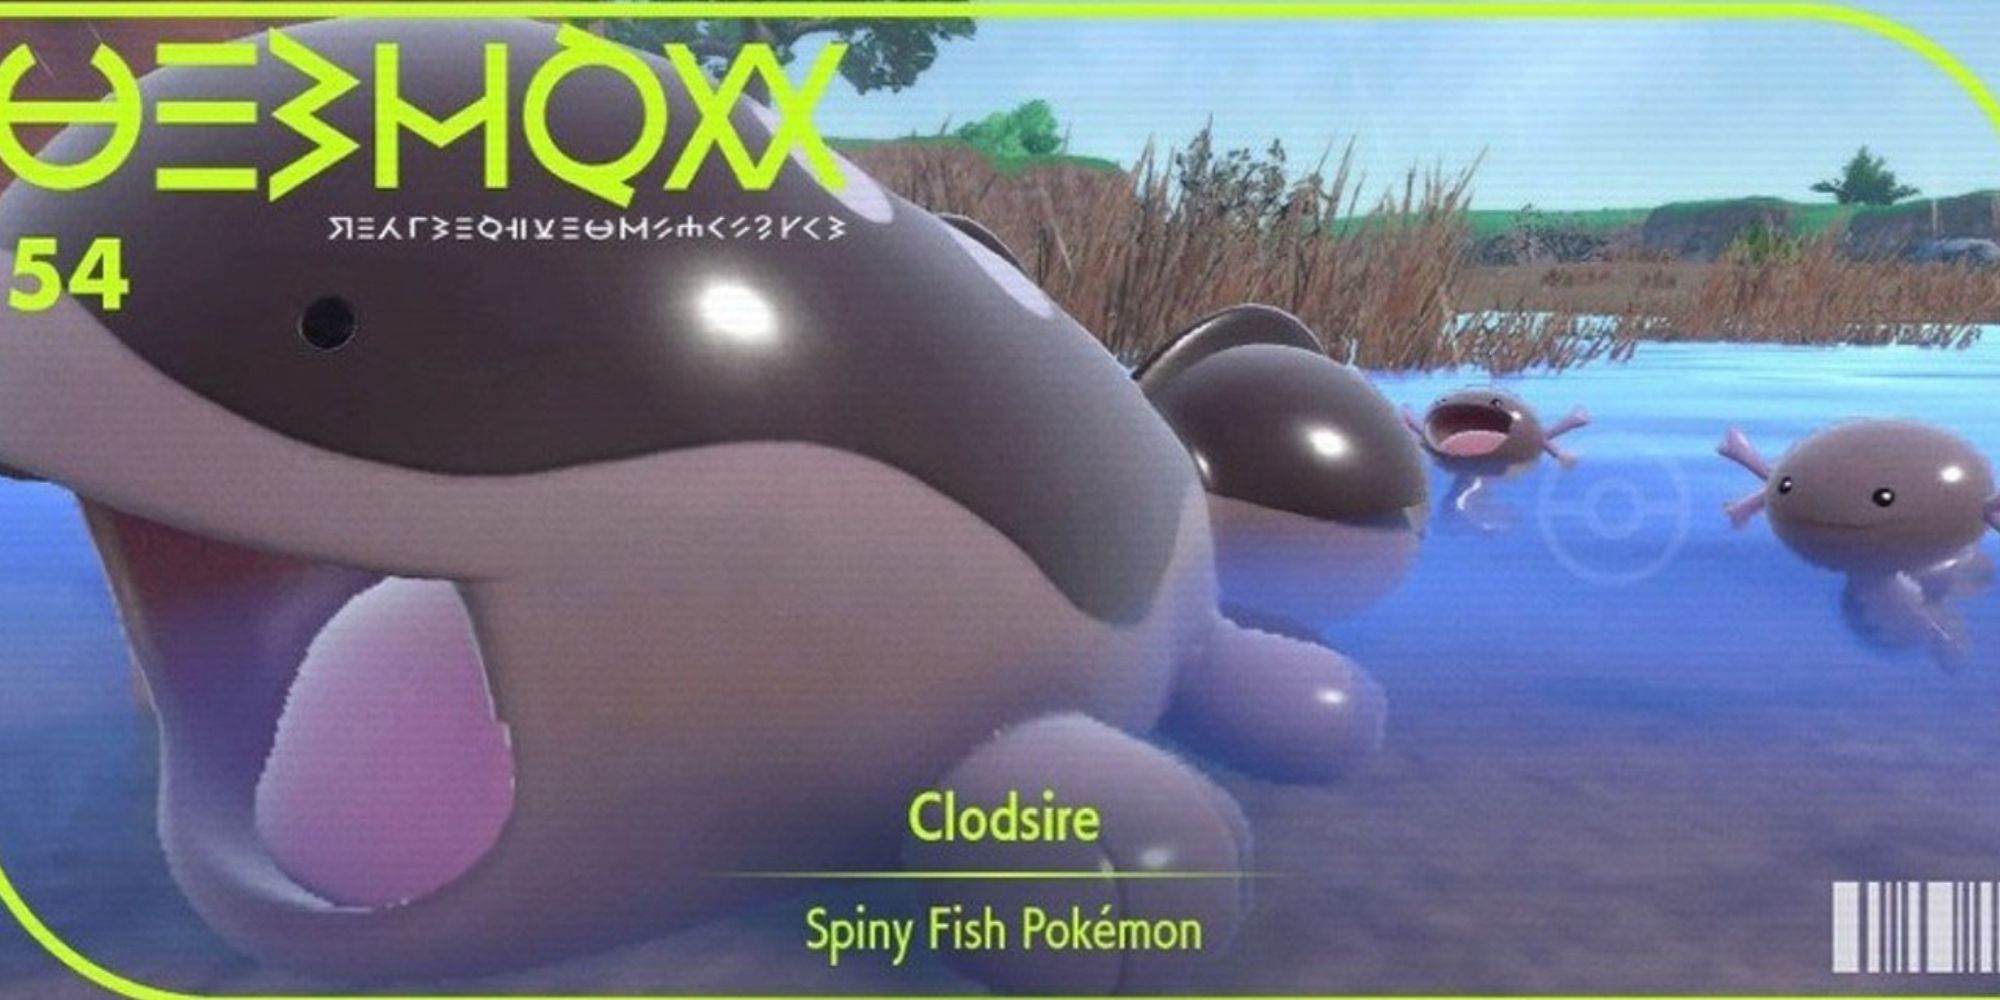 Nova geração 9 Pokémon Clodsire, o Pokémon Spiny Fish.